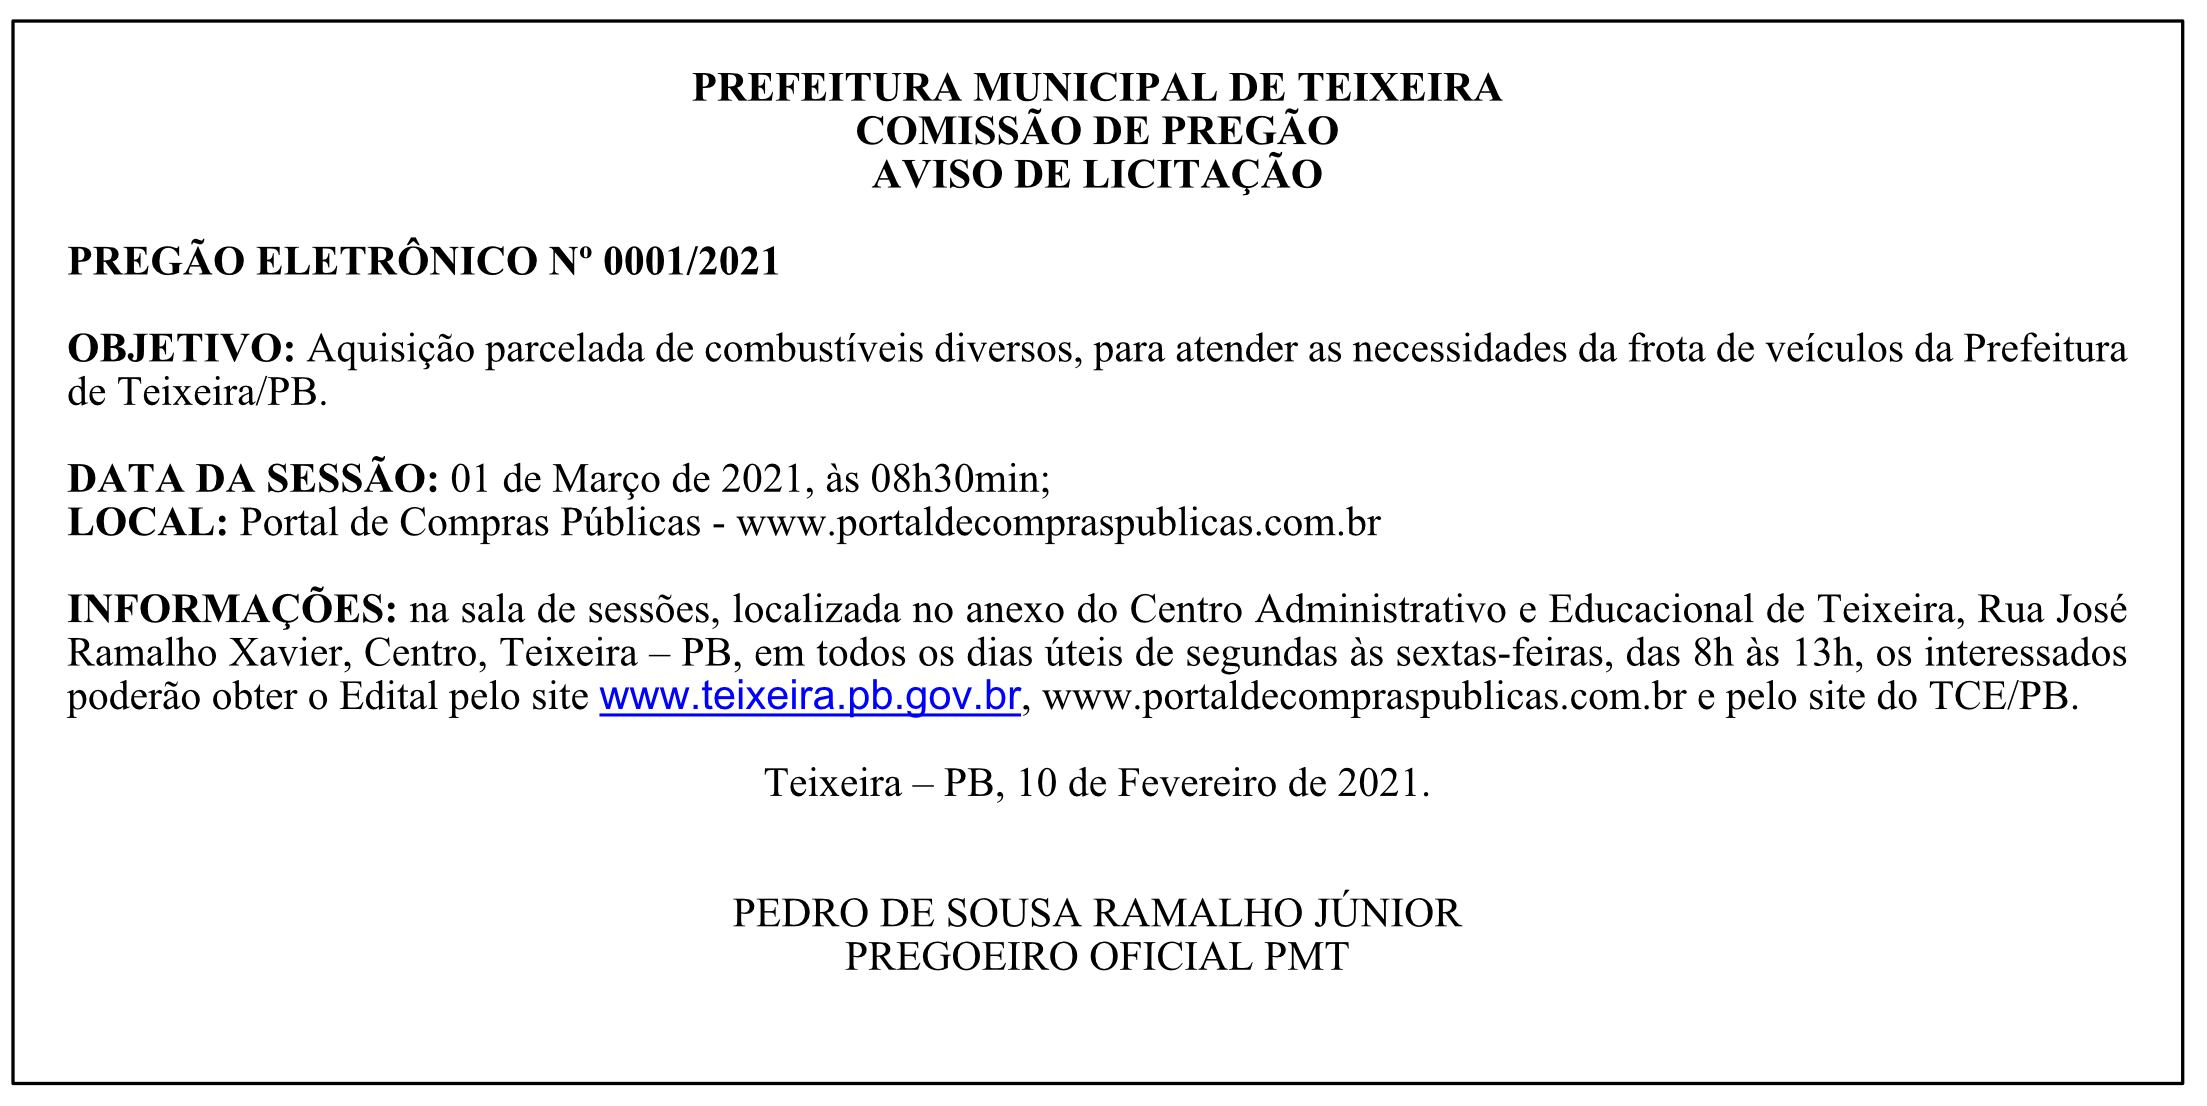 PREFEITURA MUNICIPAL DE TEIXEIRA – COMISSÃO DE PREGÃO – AVISO DE LICITAÇÃO – PREGÃO ELETRÔNICO Nº 0001/2021